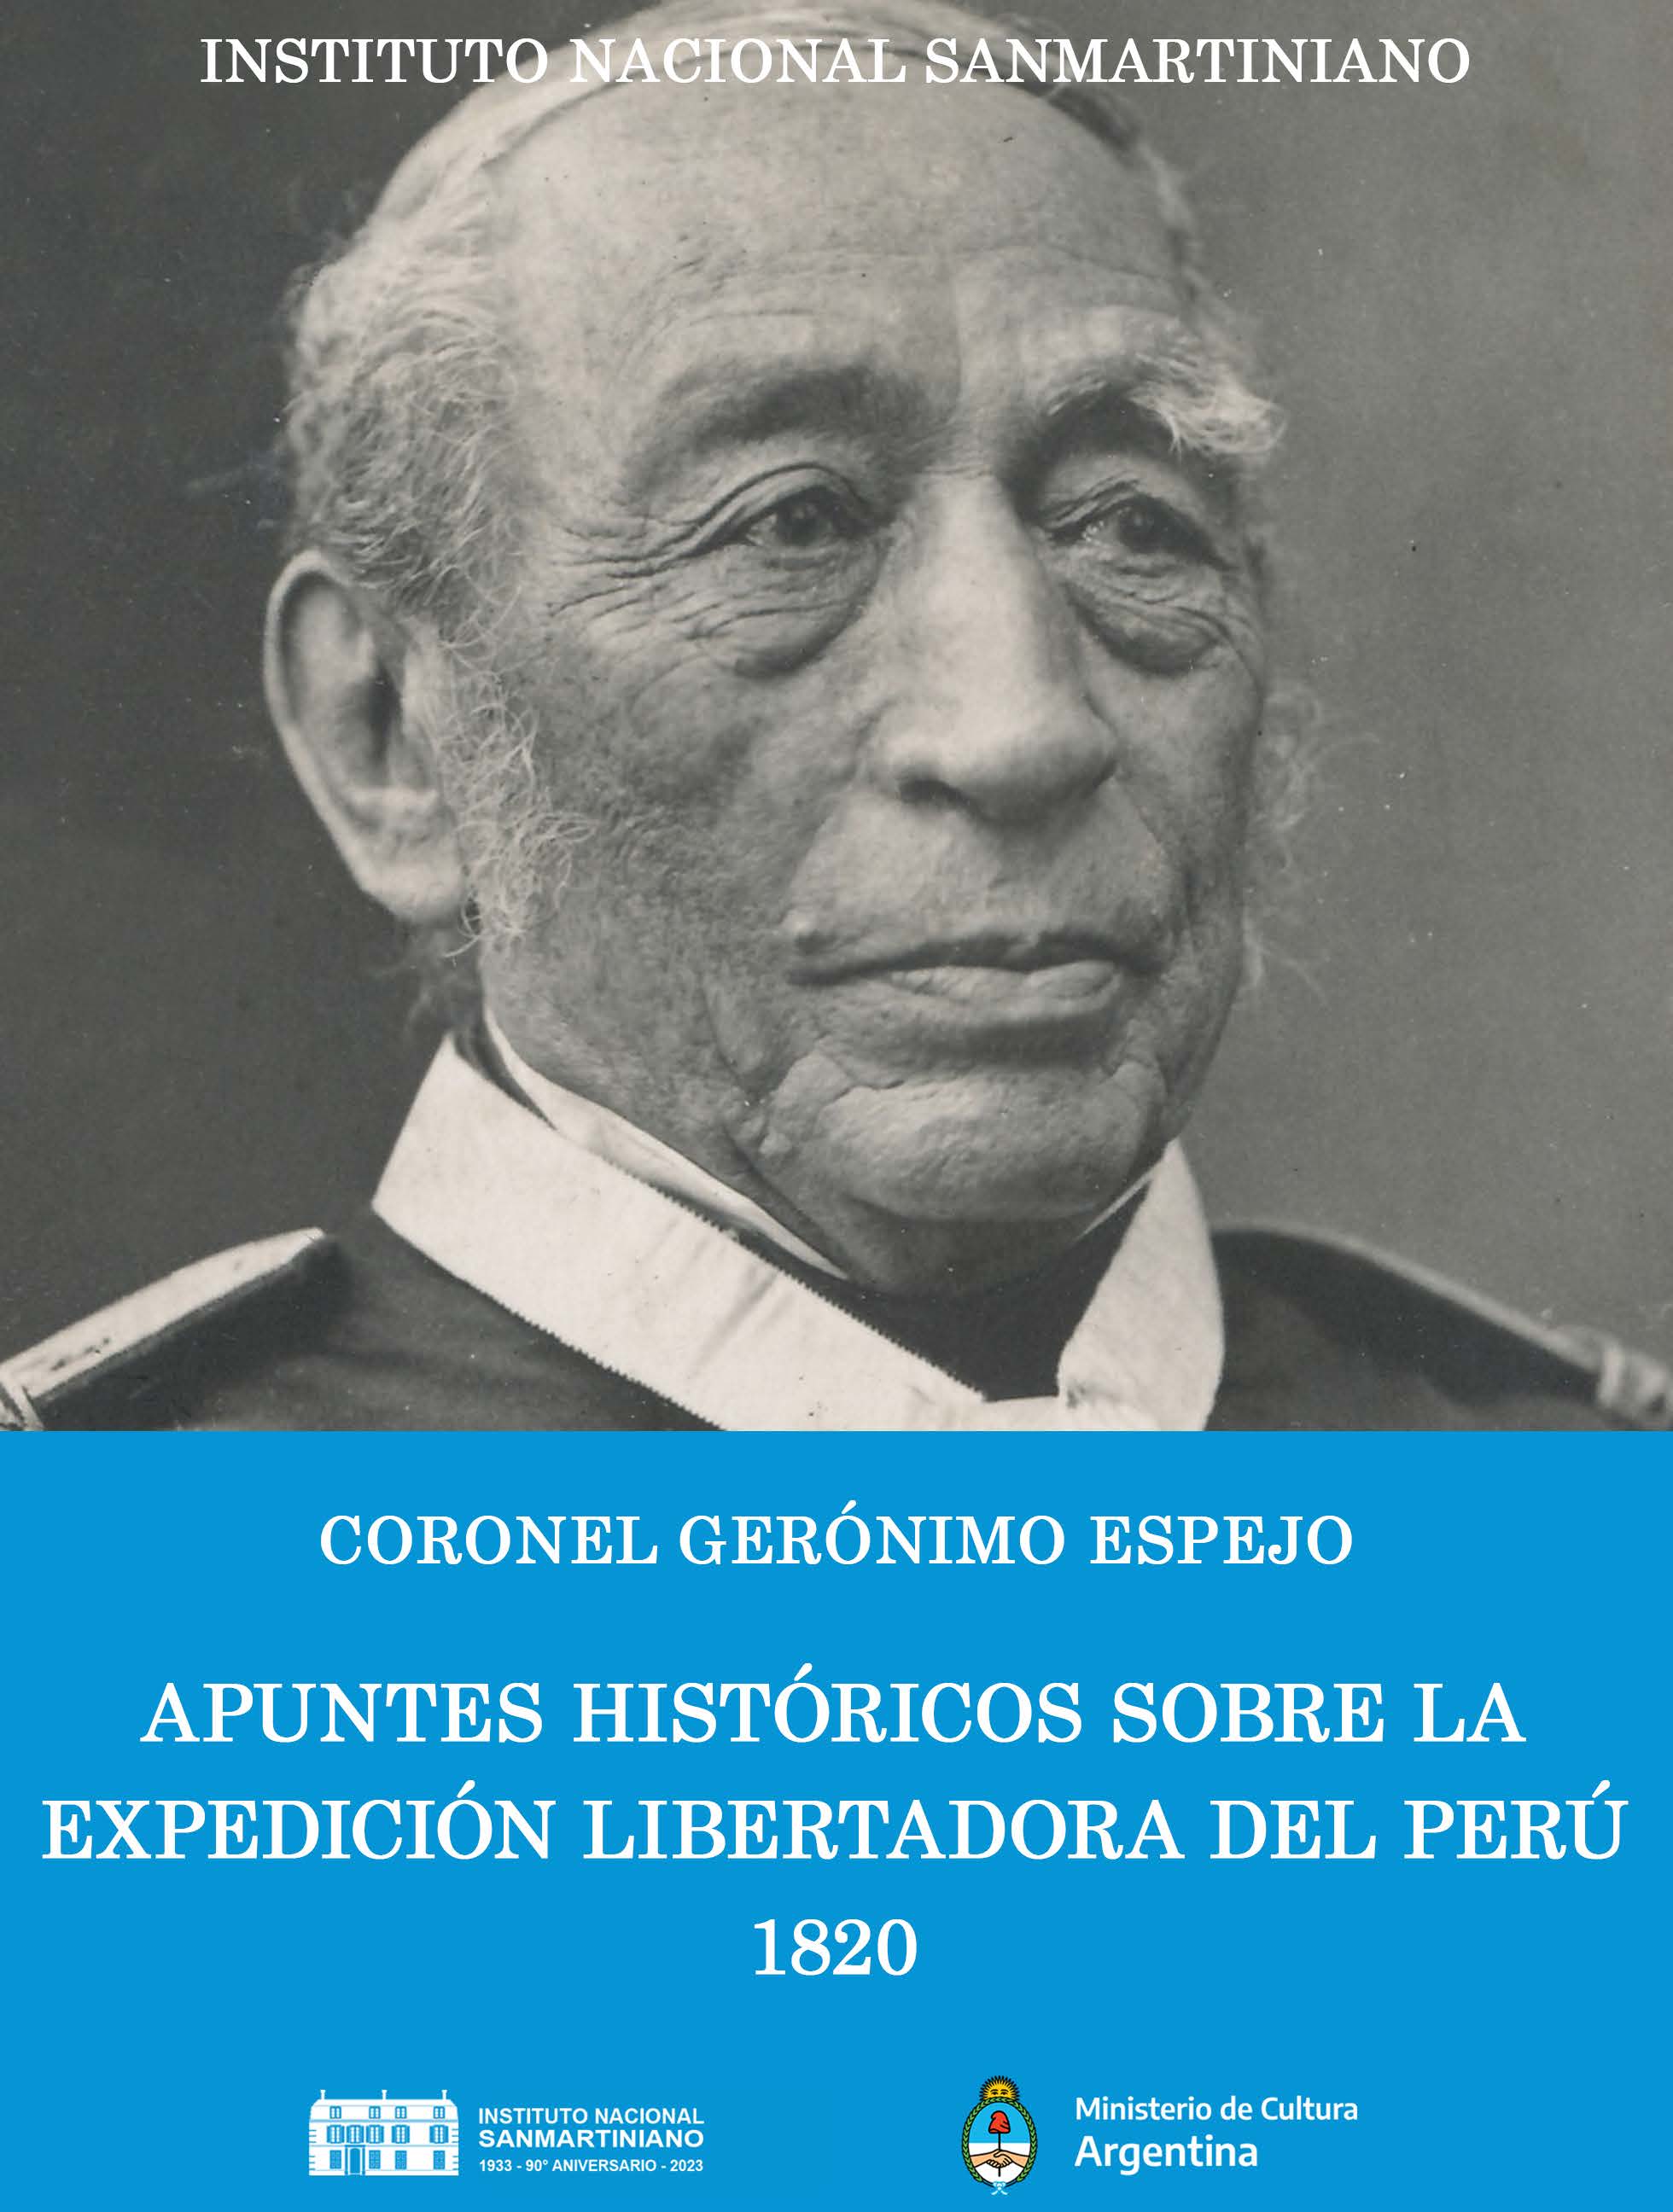 ESPEJO, Gerónimo. "Apuntes históricos sobre la Expedición Libertadora del Perú. 1820". Instituto Nacional Sanmartiniano. Buenos Aires, 2023.